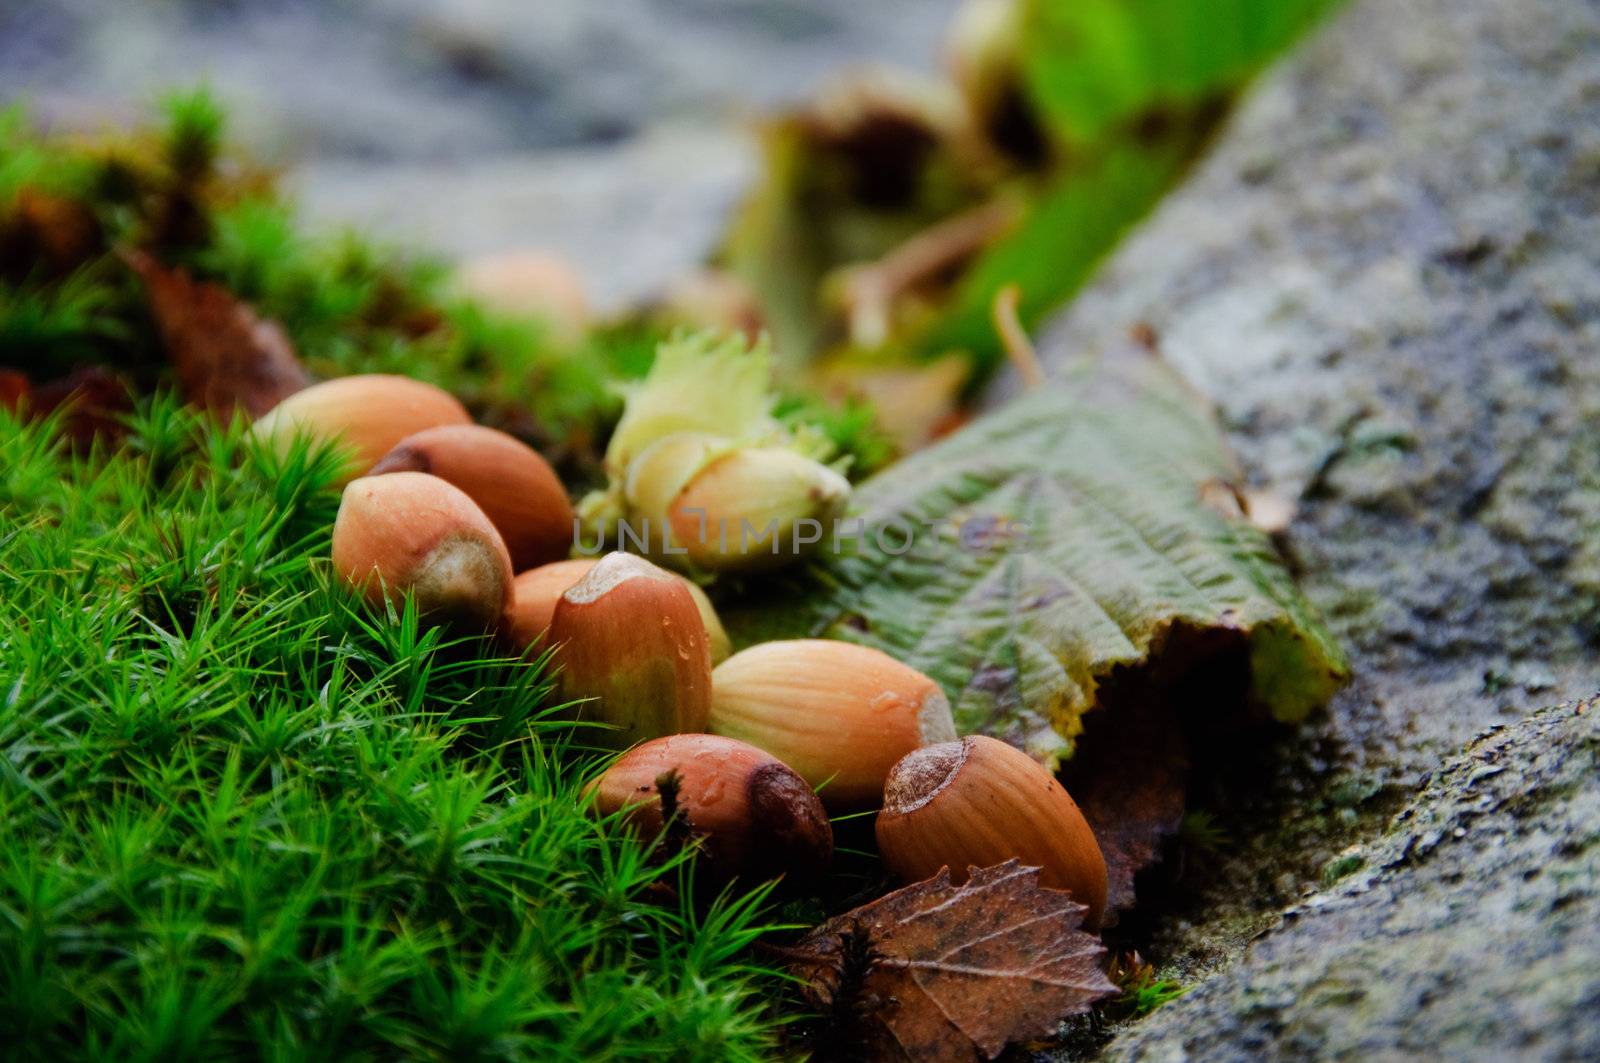 Hazelnuts in the moss by GryT